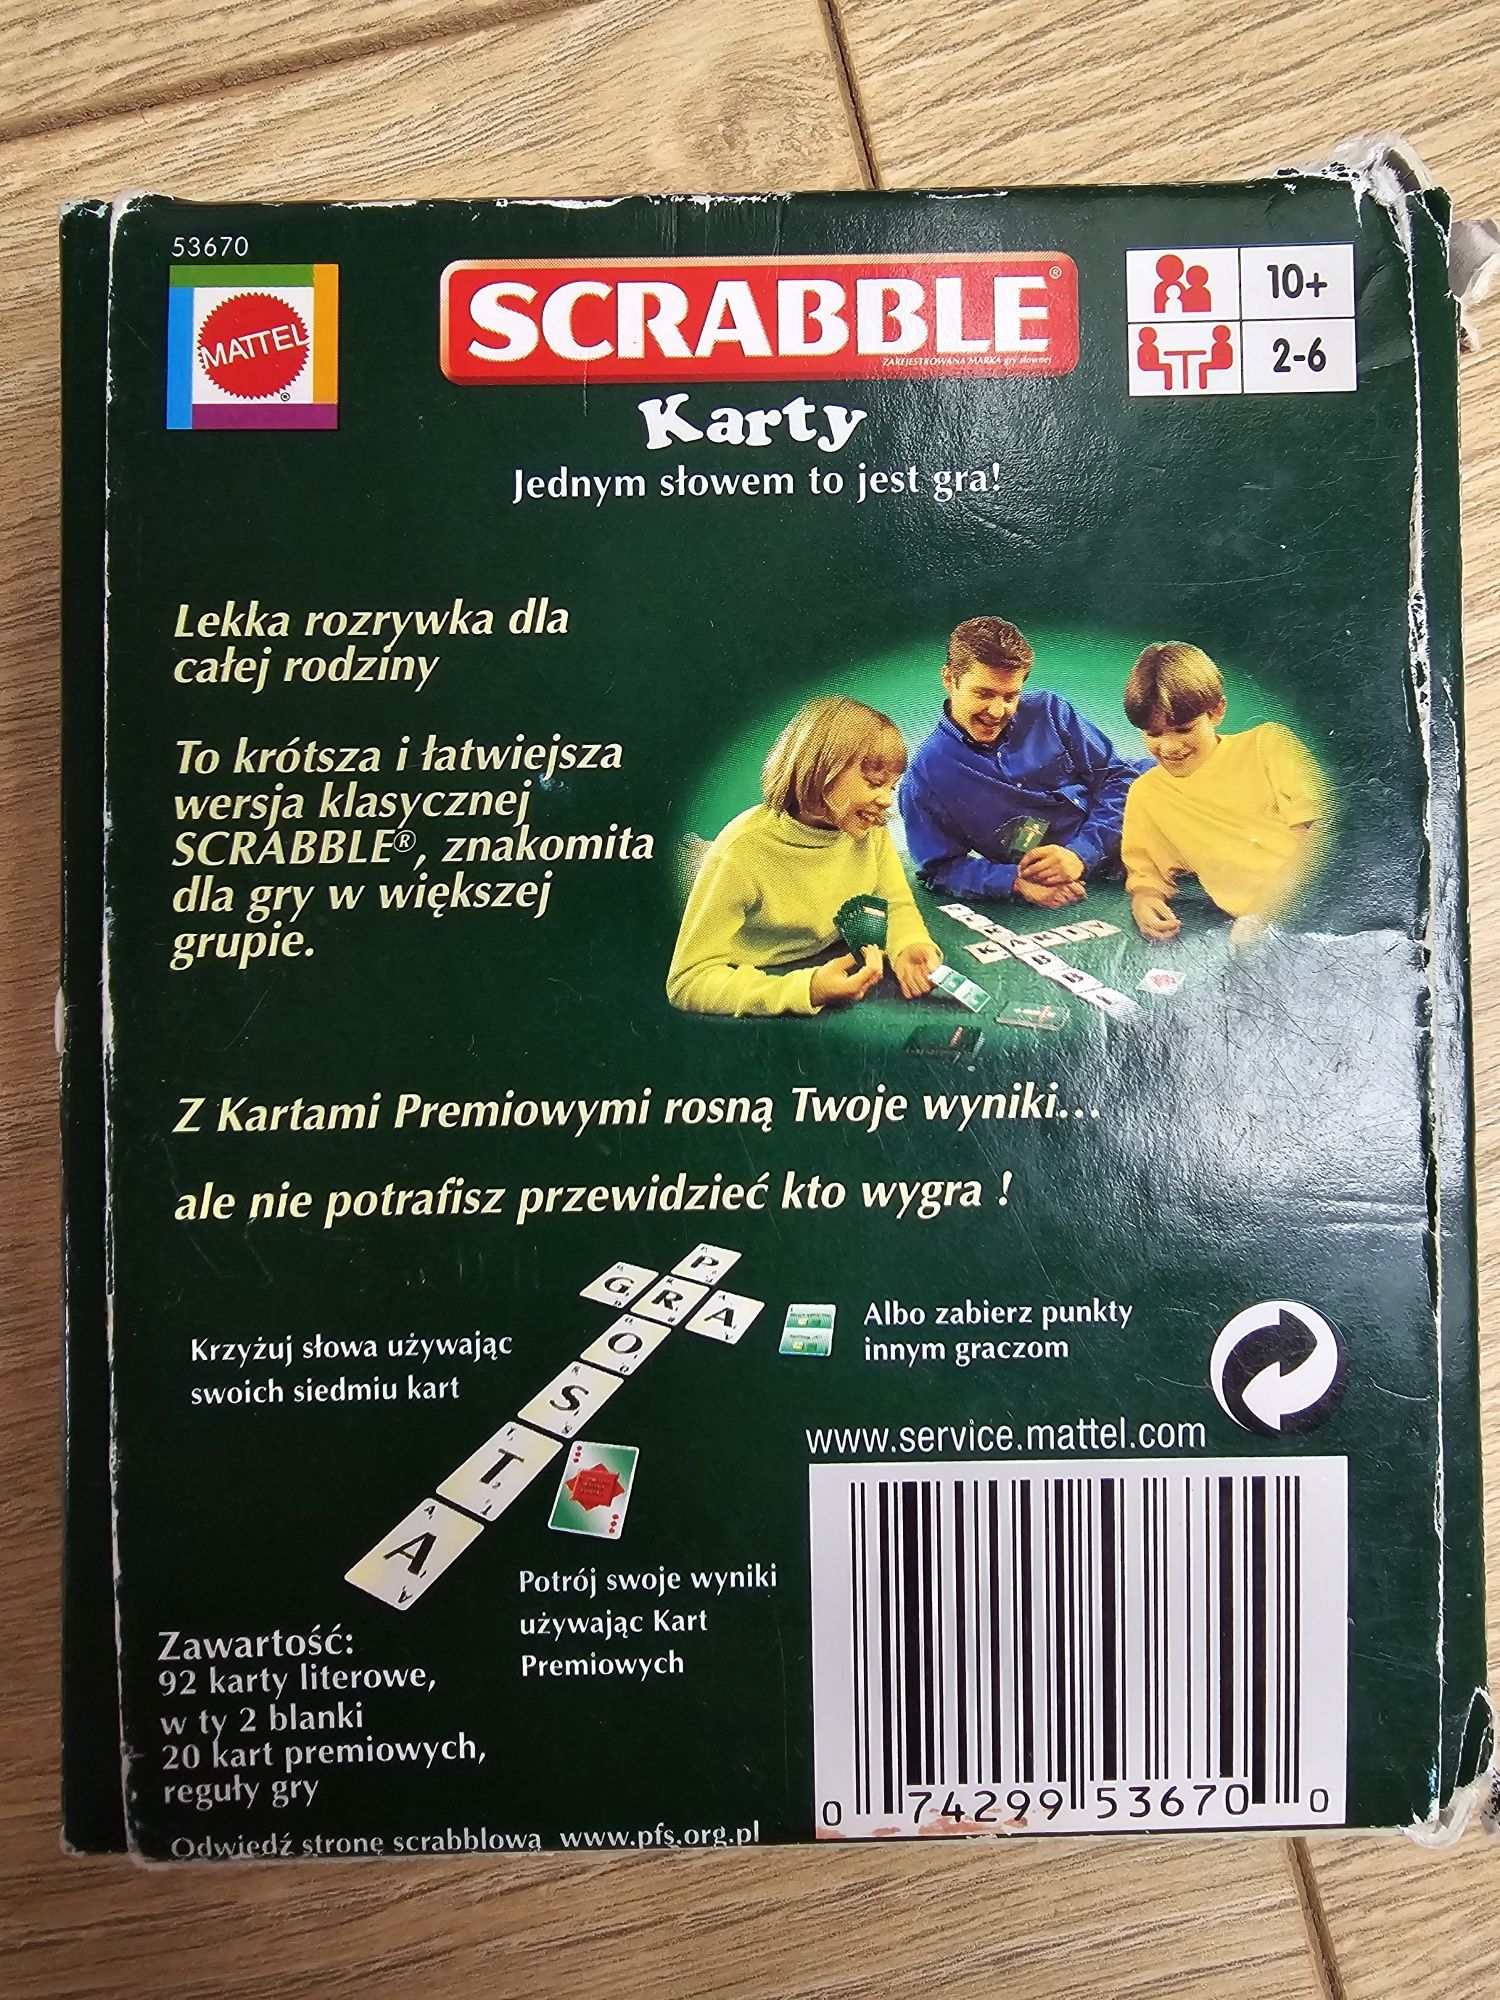 Scrabble karty gra karciana słowna